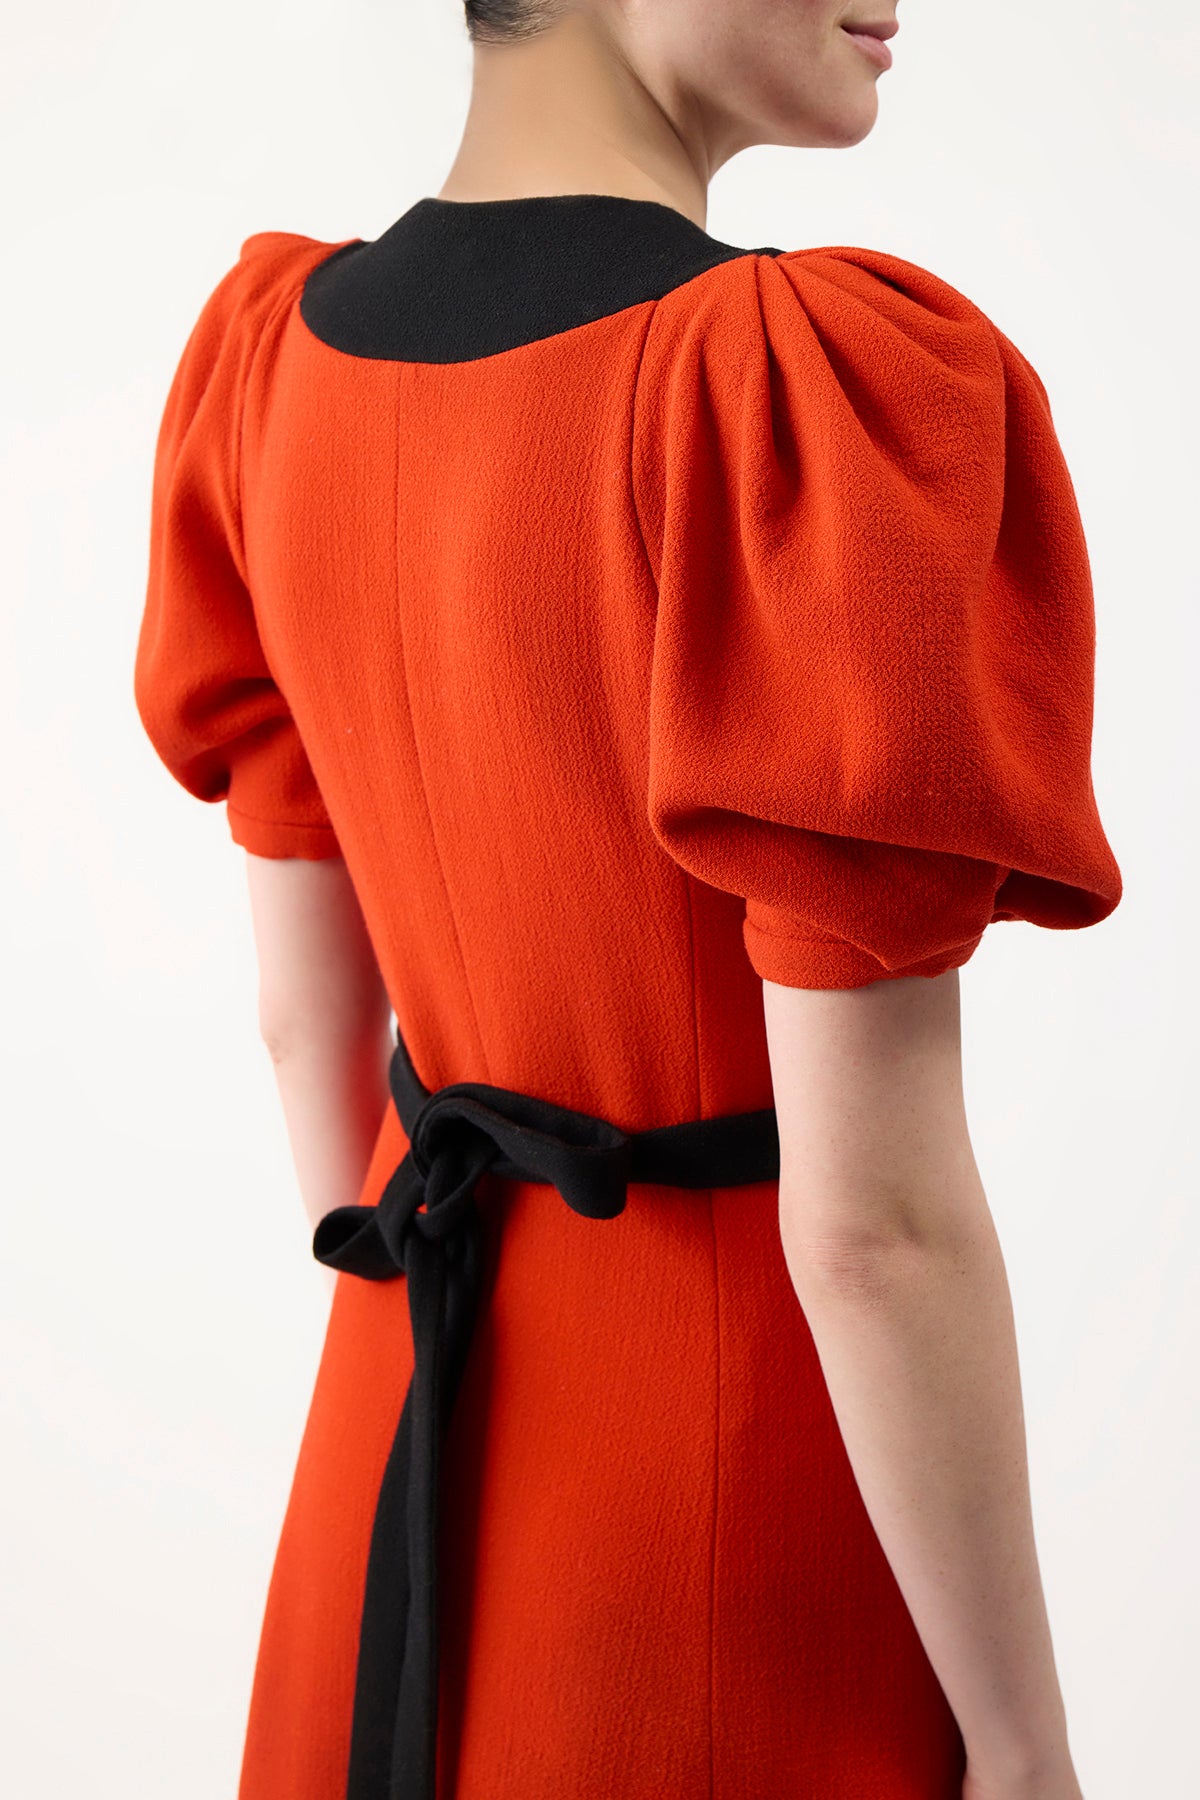 Luz Dress in Tonic Orange Wool